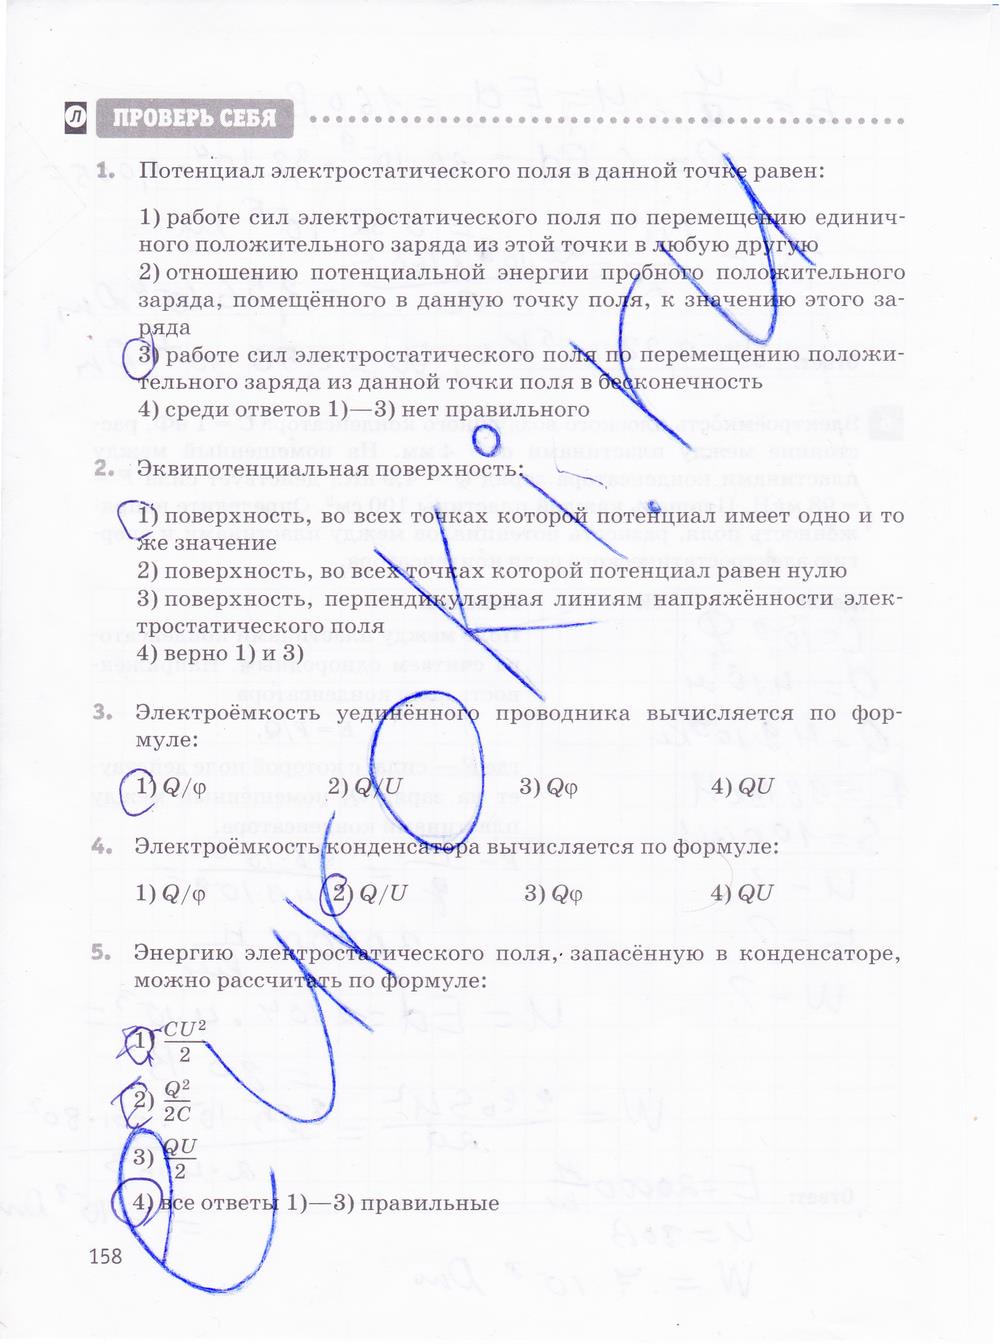 гдз 10 класс рабочая тетрадь страница 158 физика Касьянов, Дмитриева